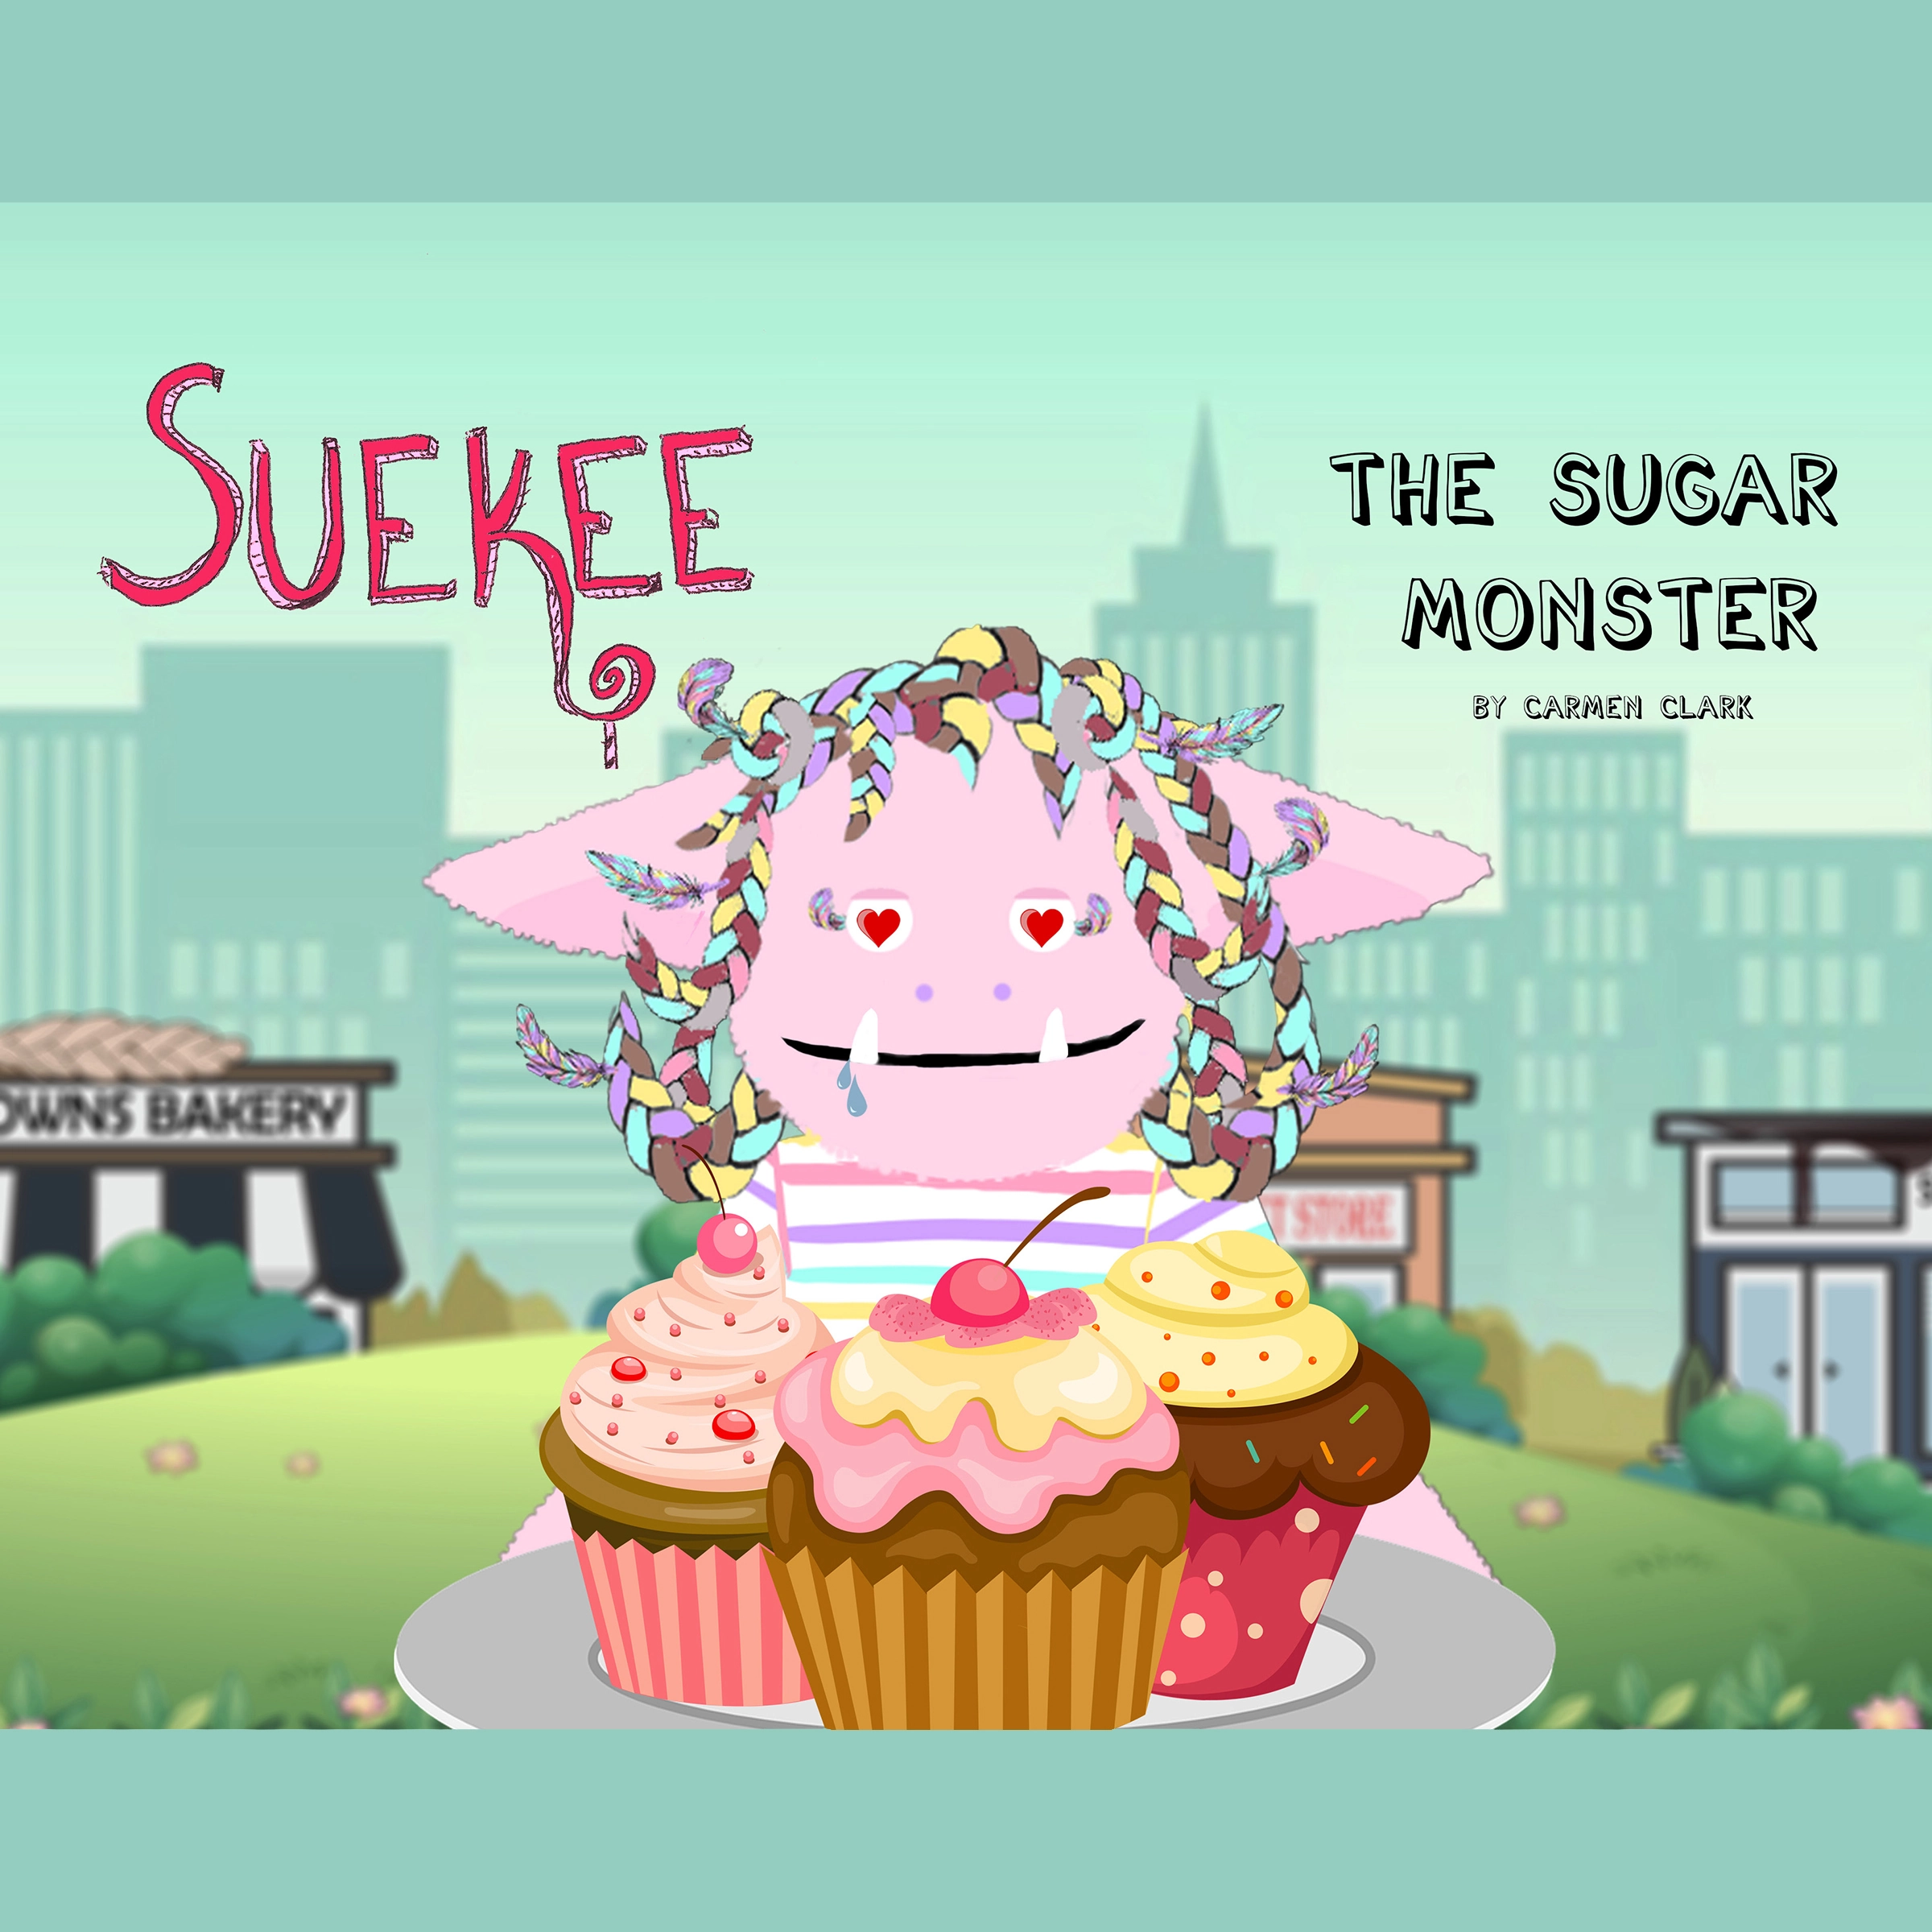 Suekee The Sugar Monster Audiobook by Carmen Clark